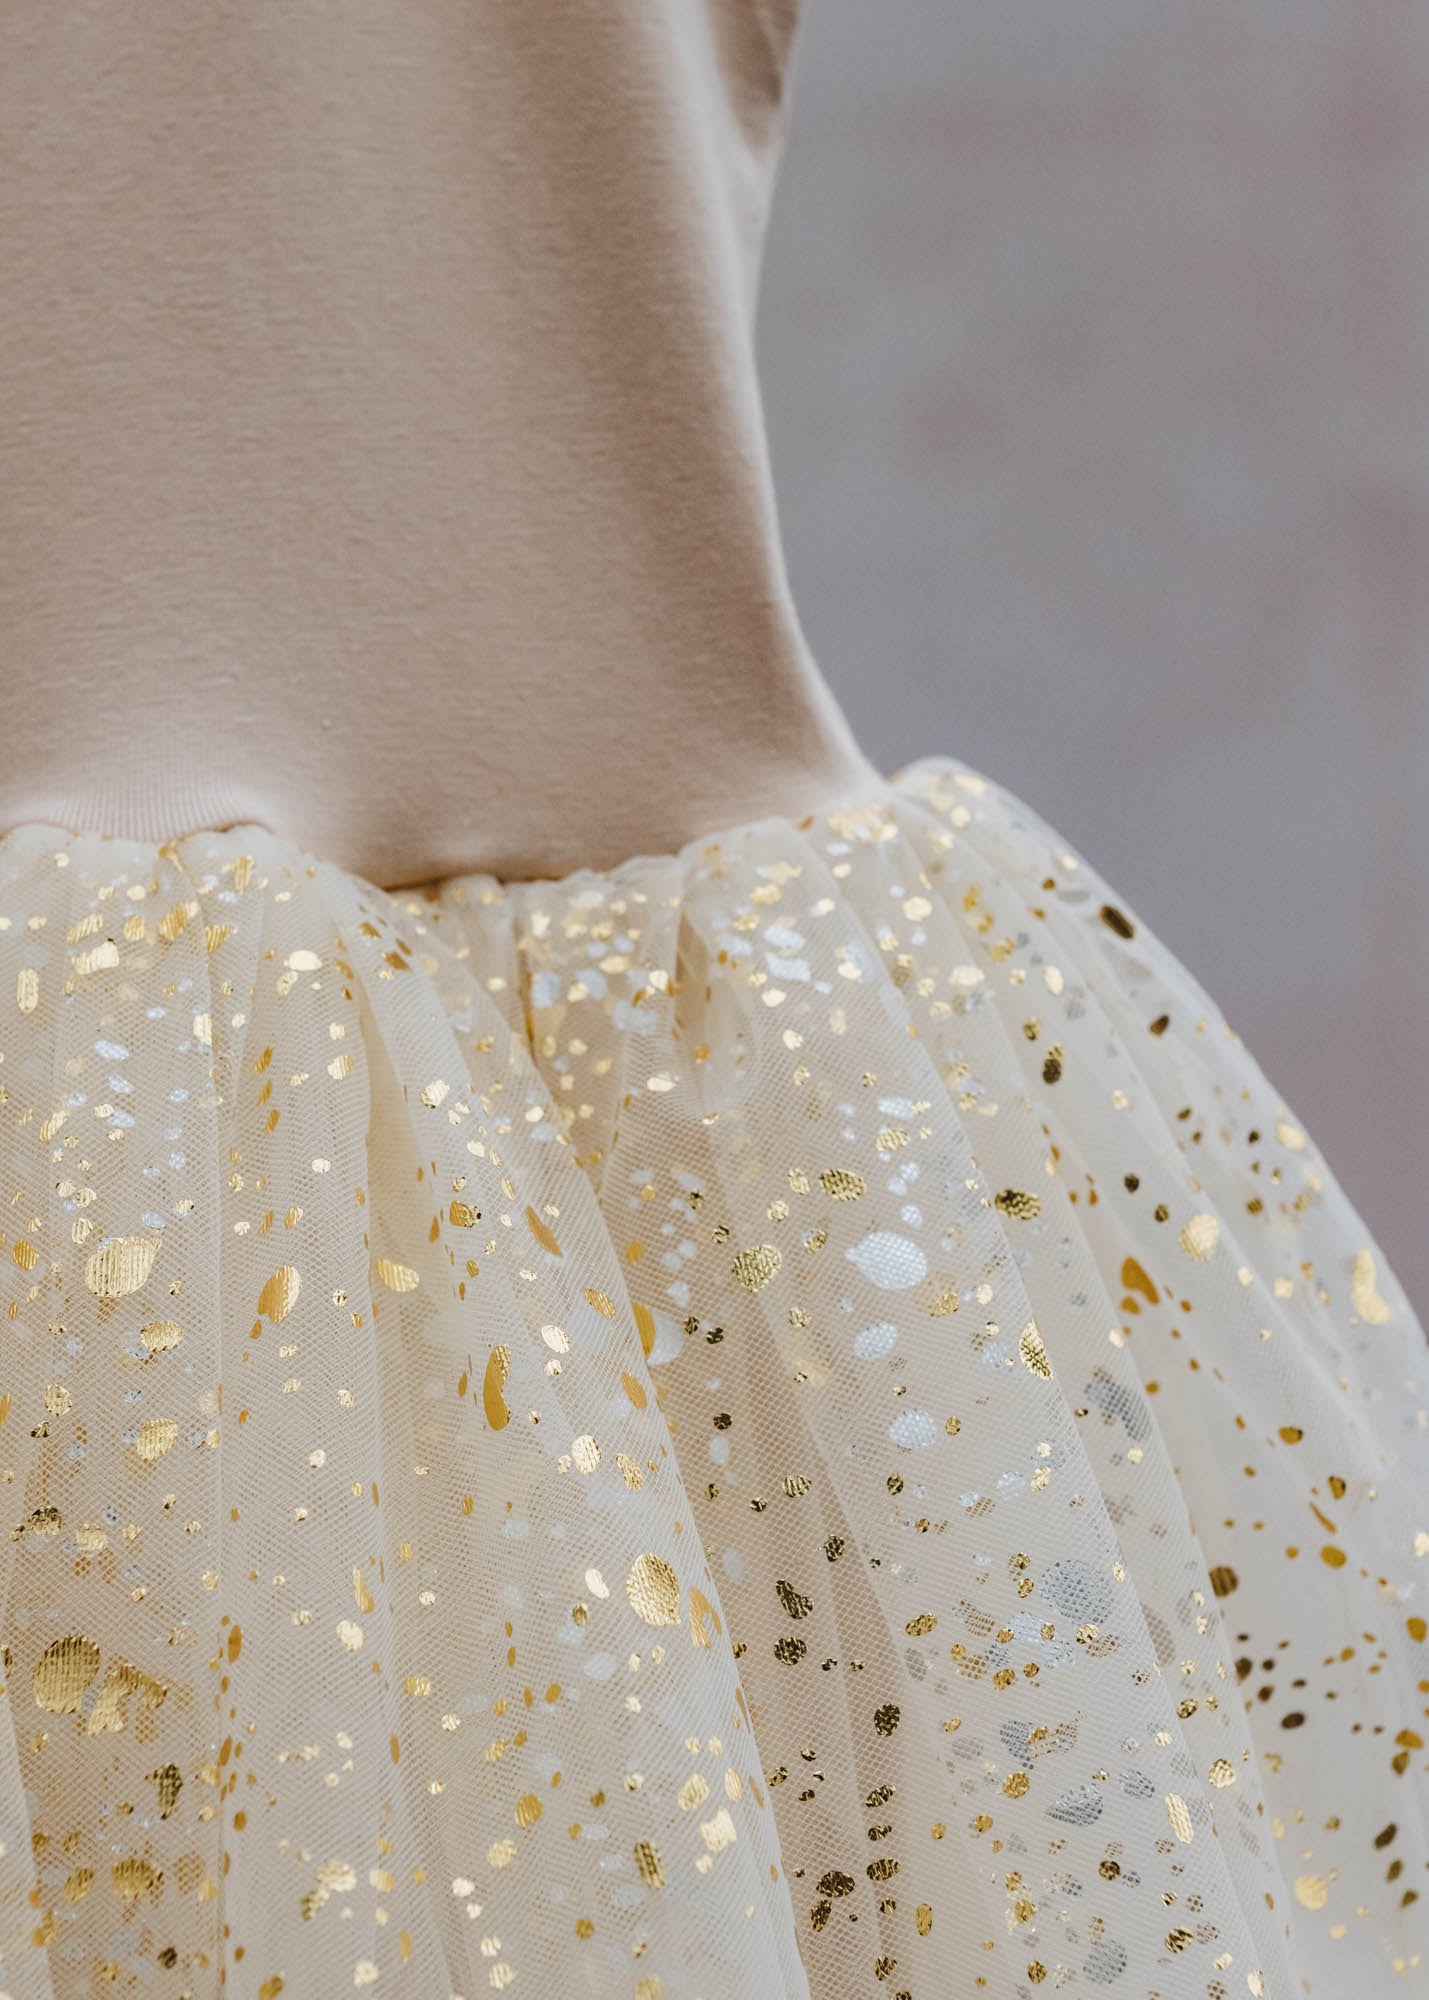 Bob & Blossom Children's Gold Sparkle Tutu Dress